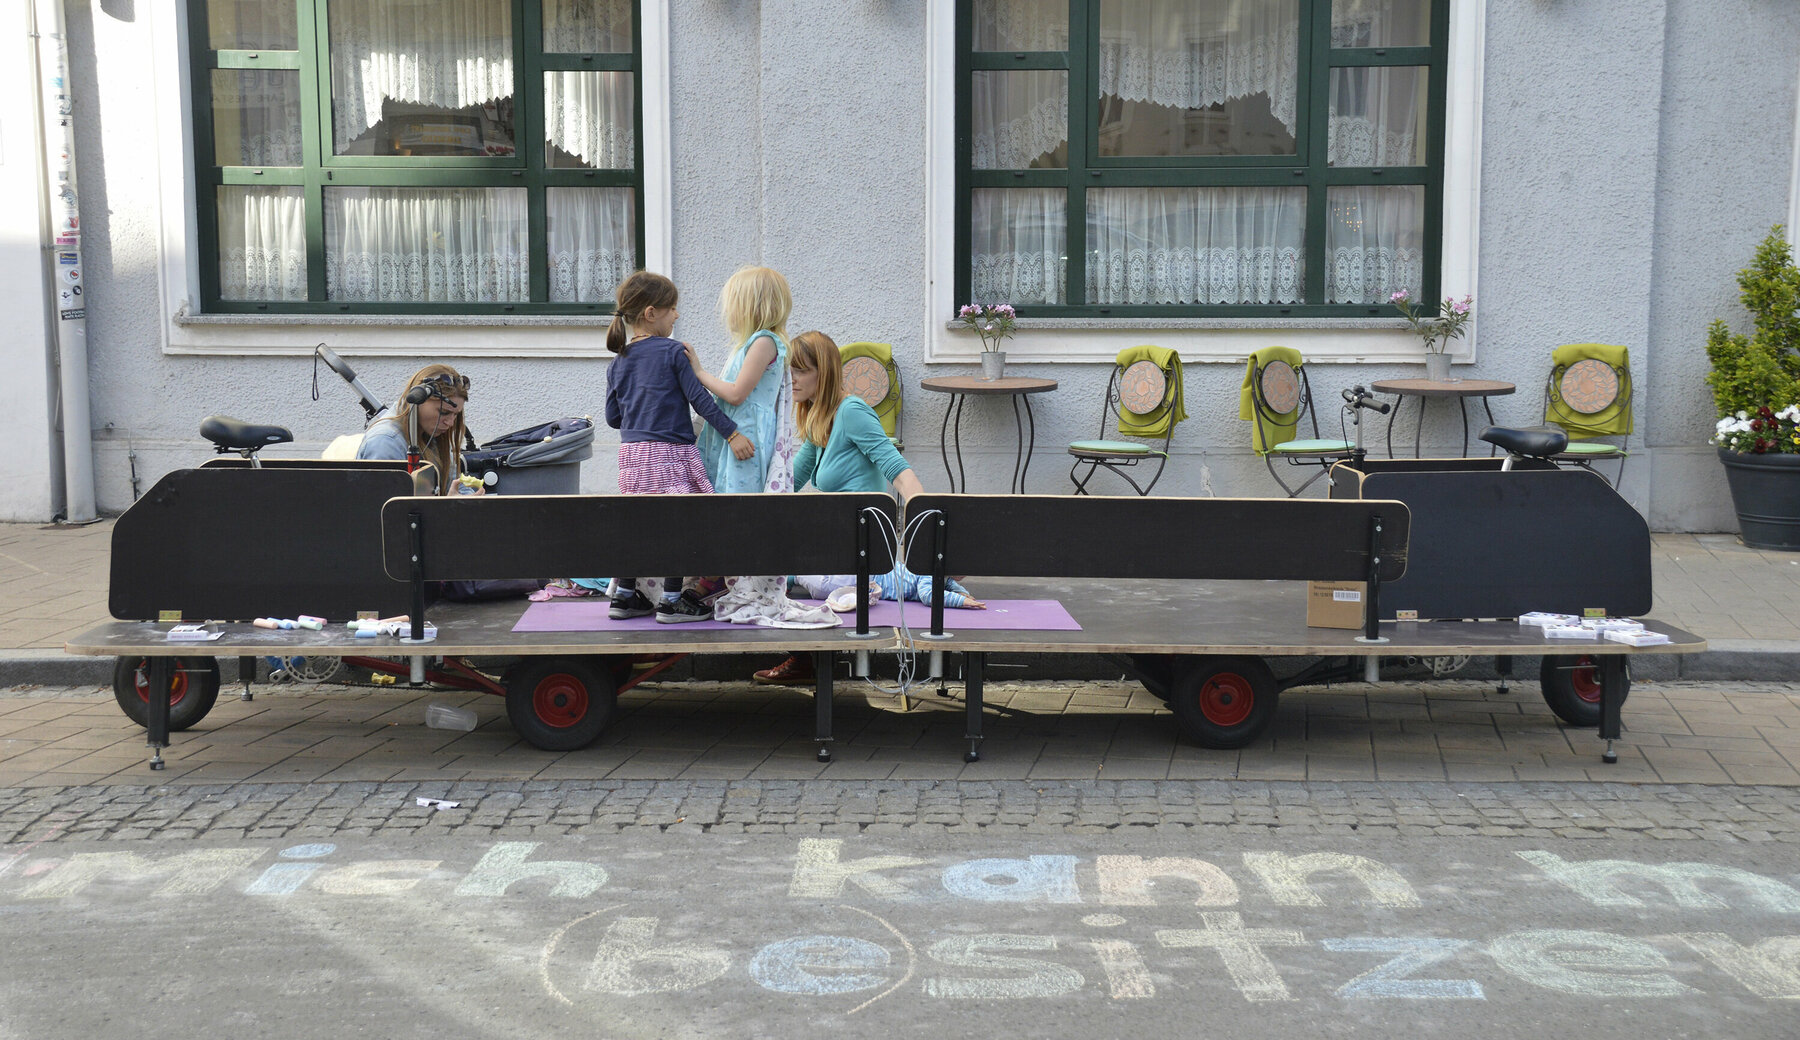 Eine große hölzerne Sitzmöglichkeit, die auch als Fahrrad funktioniert, parkt vor einem Haus in Graz. Zwei Frauen und ihre Kinder spielen darauf.